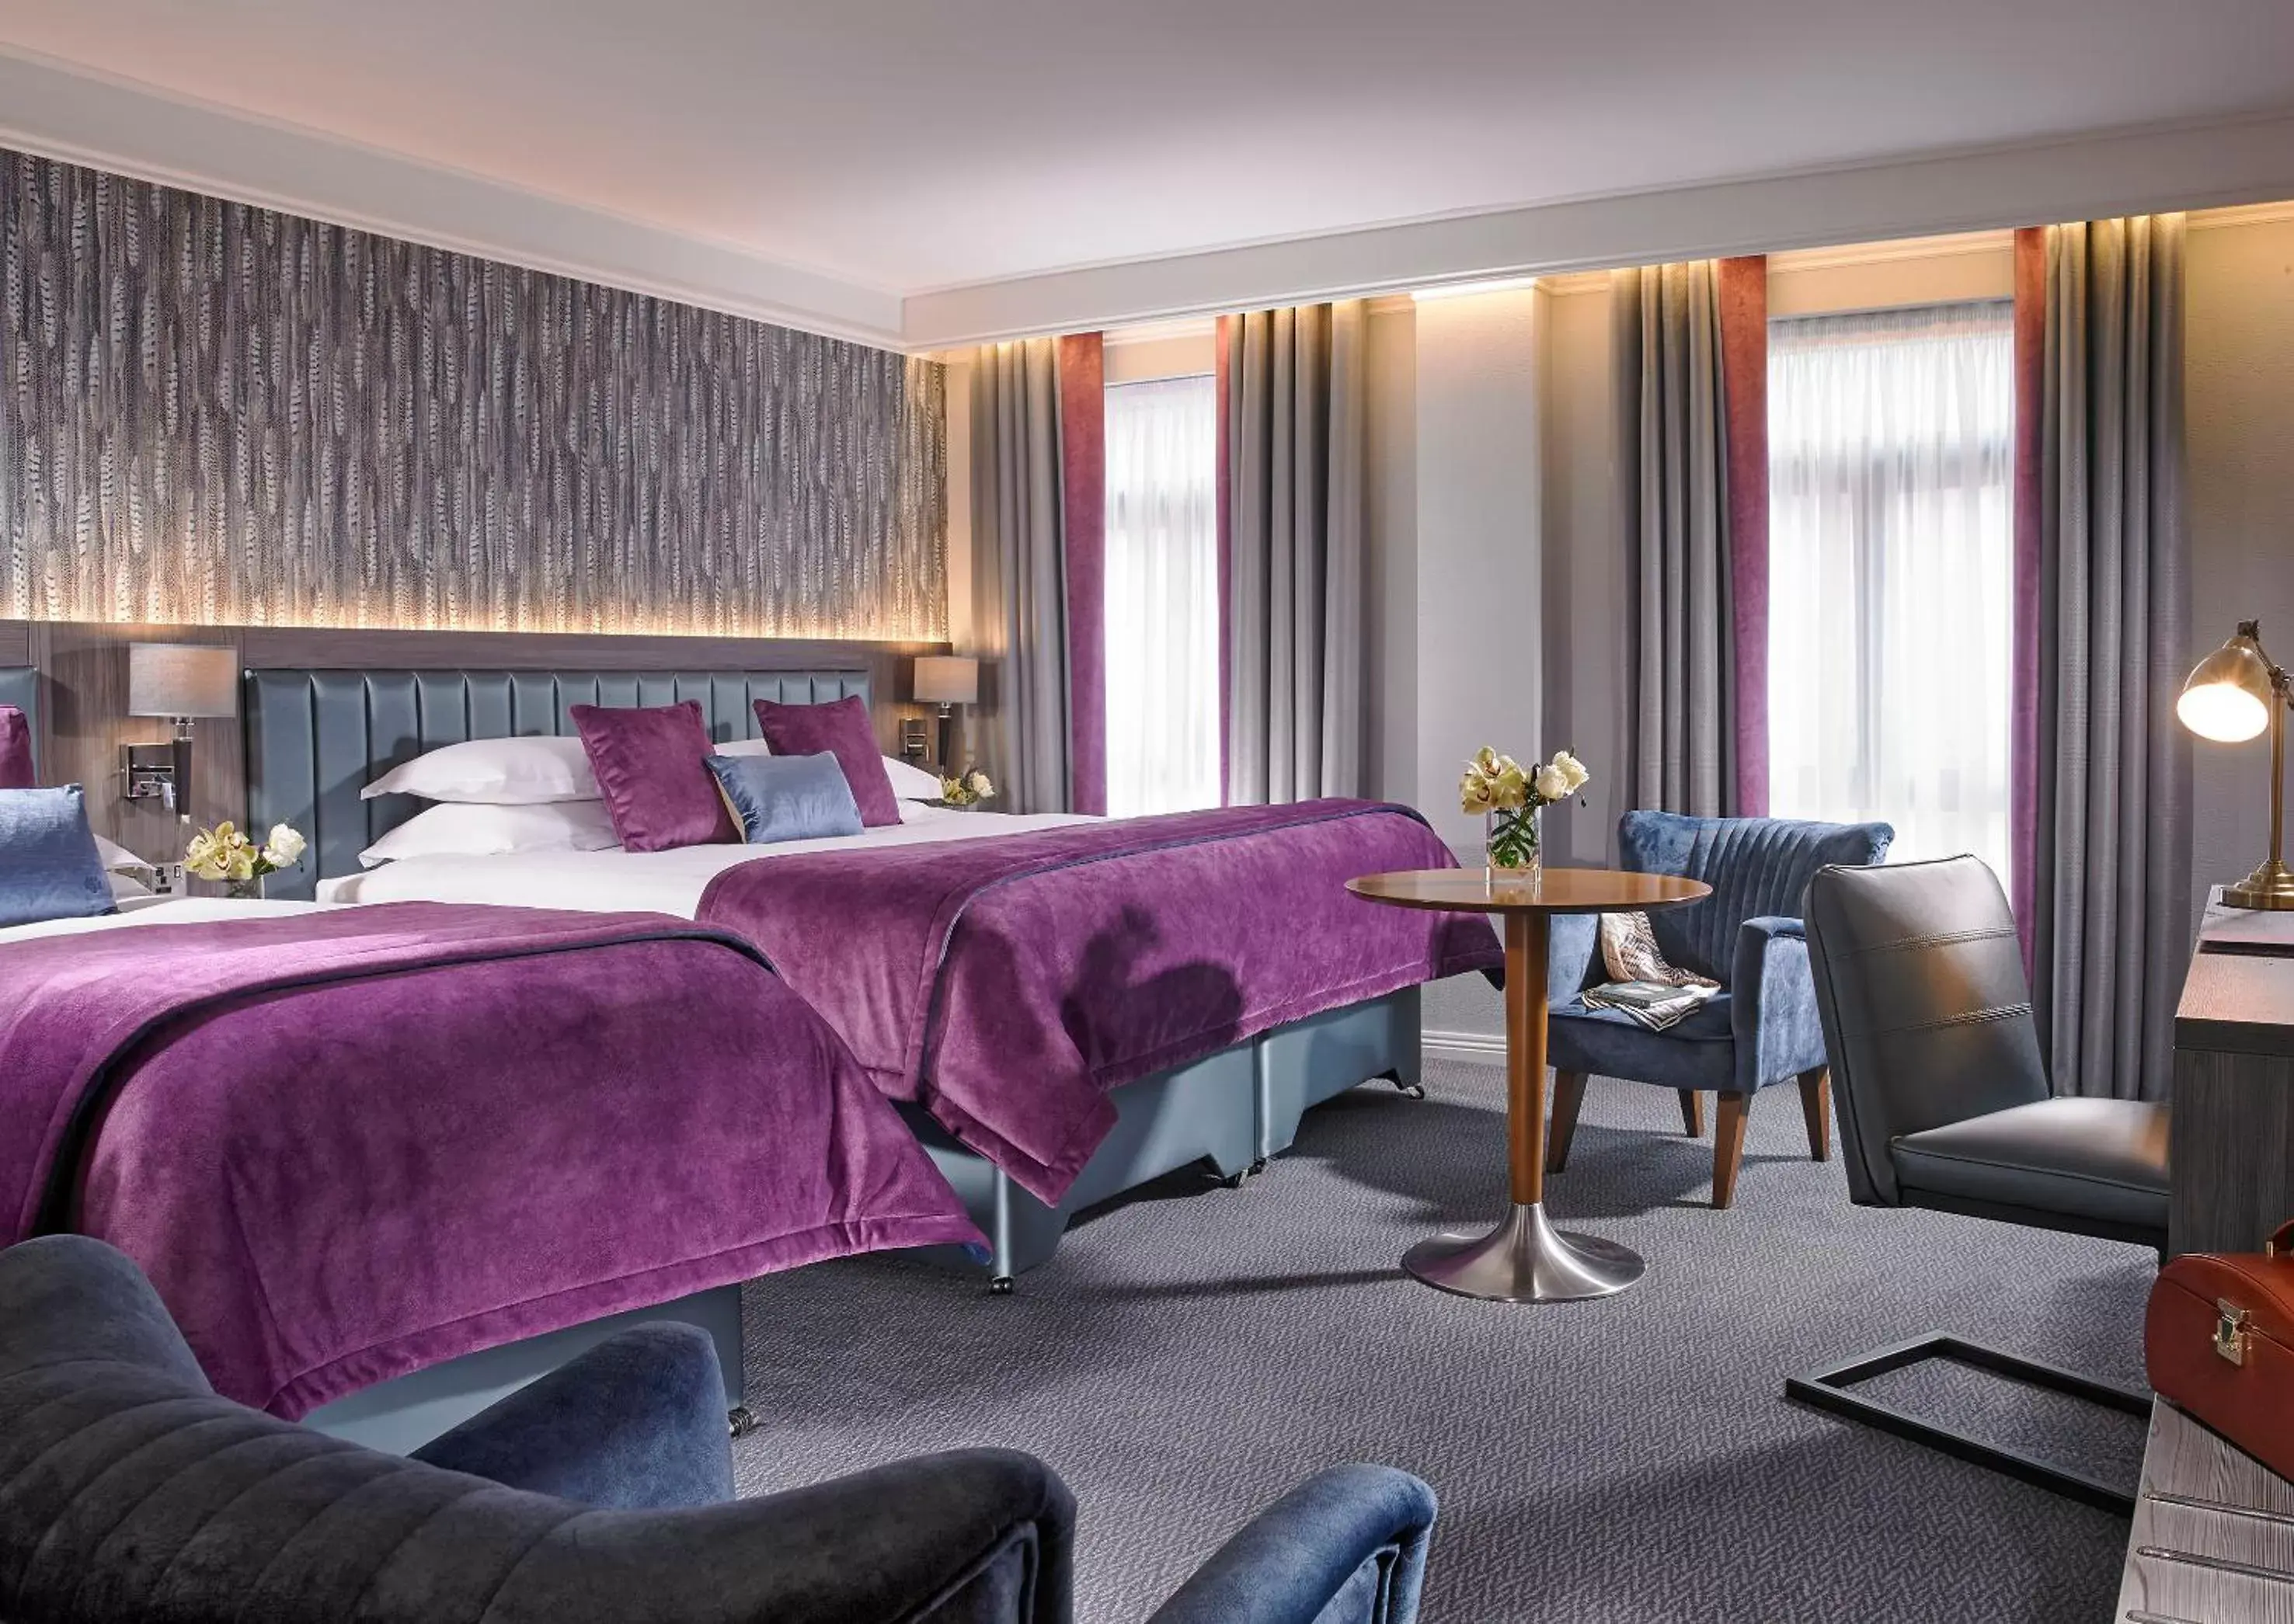 Bed in Kilkenny Ormonde Hotel